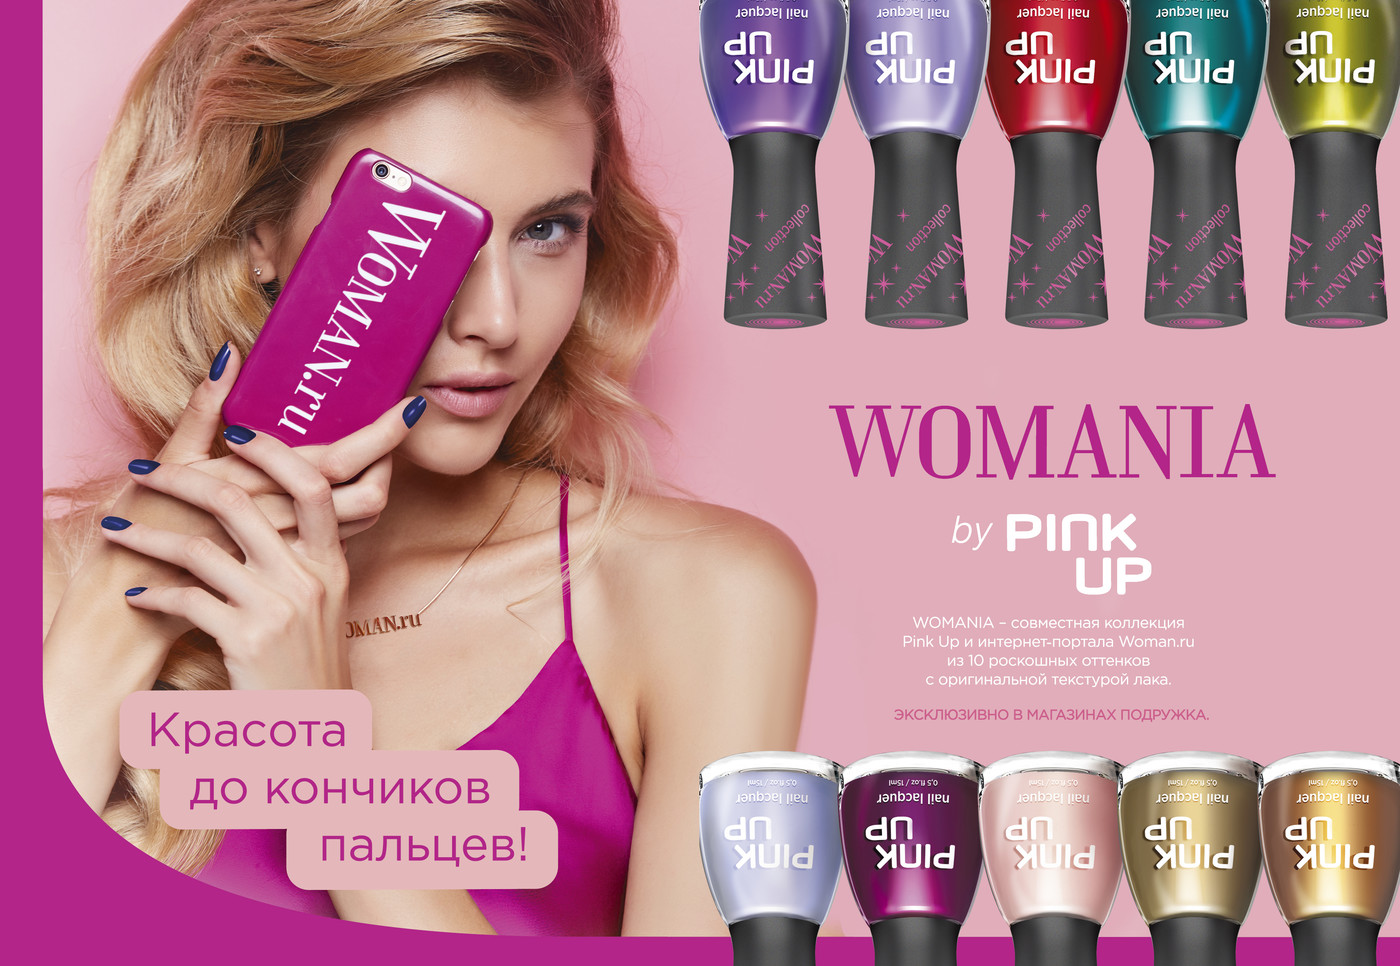 У всех на ногтях! WOMANIA by Pink Up − совместная коллекция лаков от Woman.ru и «Подружки»